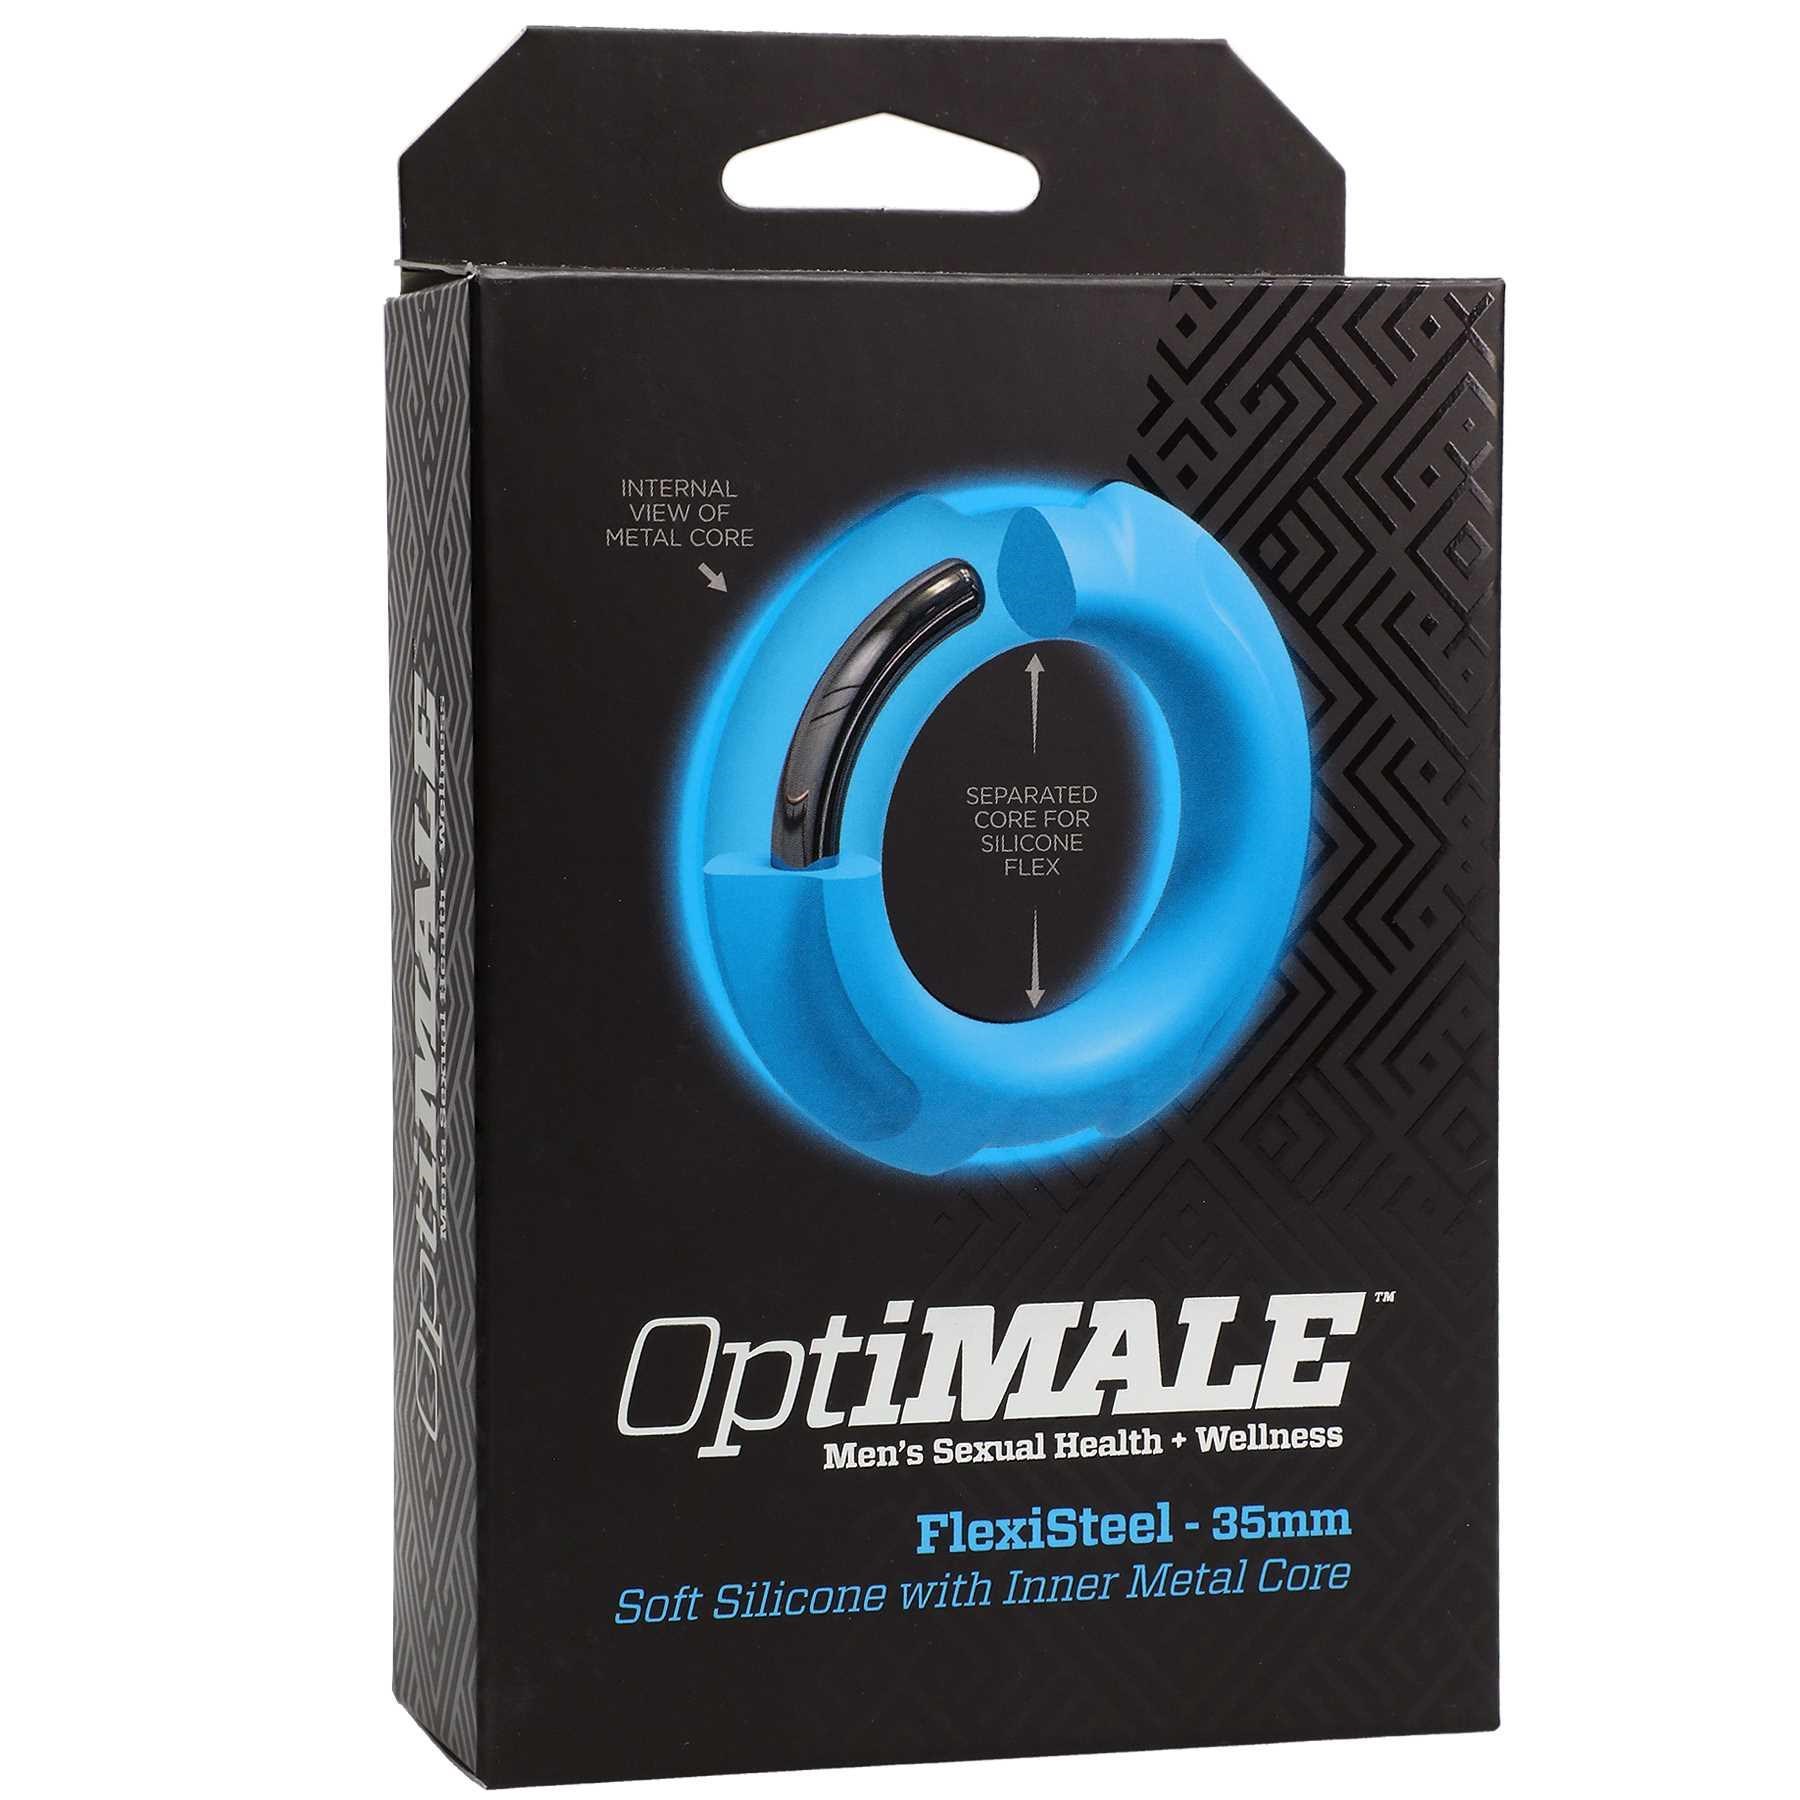 OptiMALE FlexiSteel C-Ring packaging